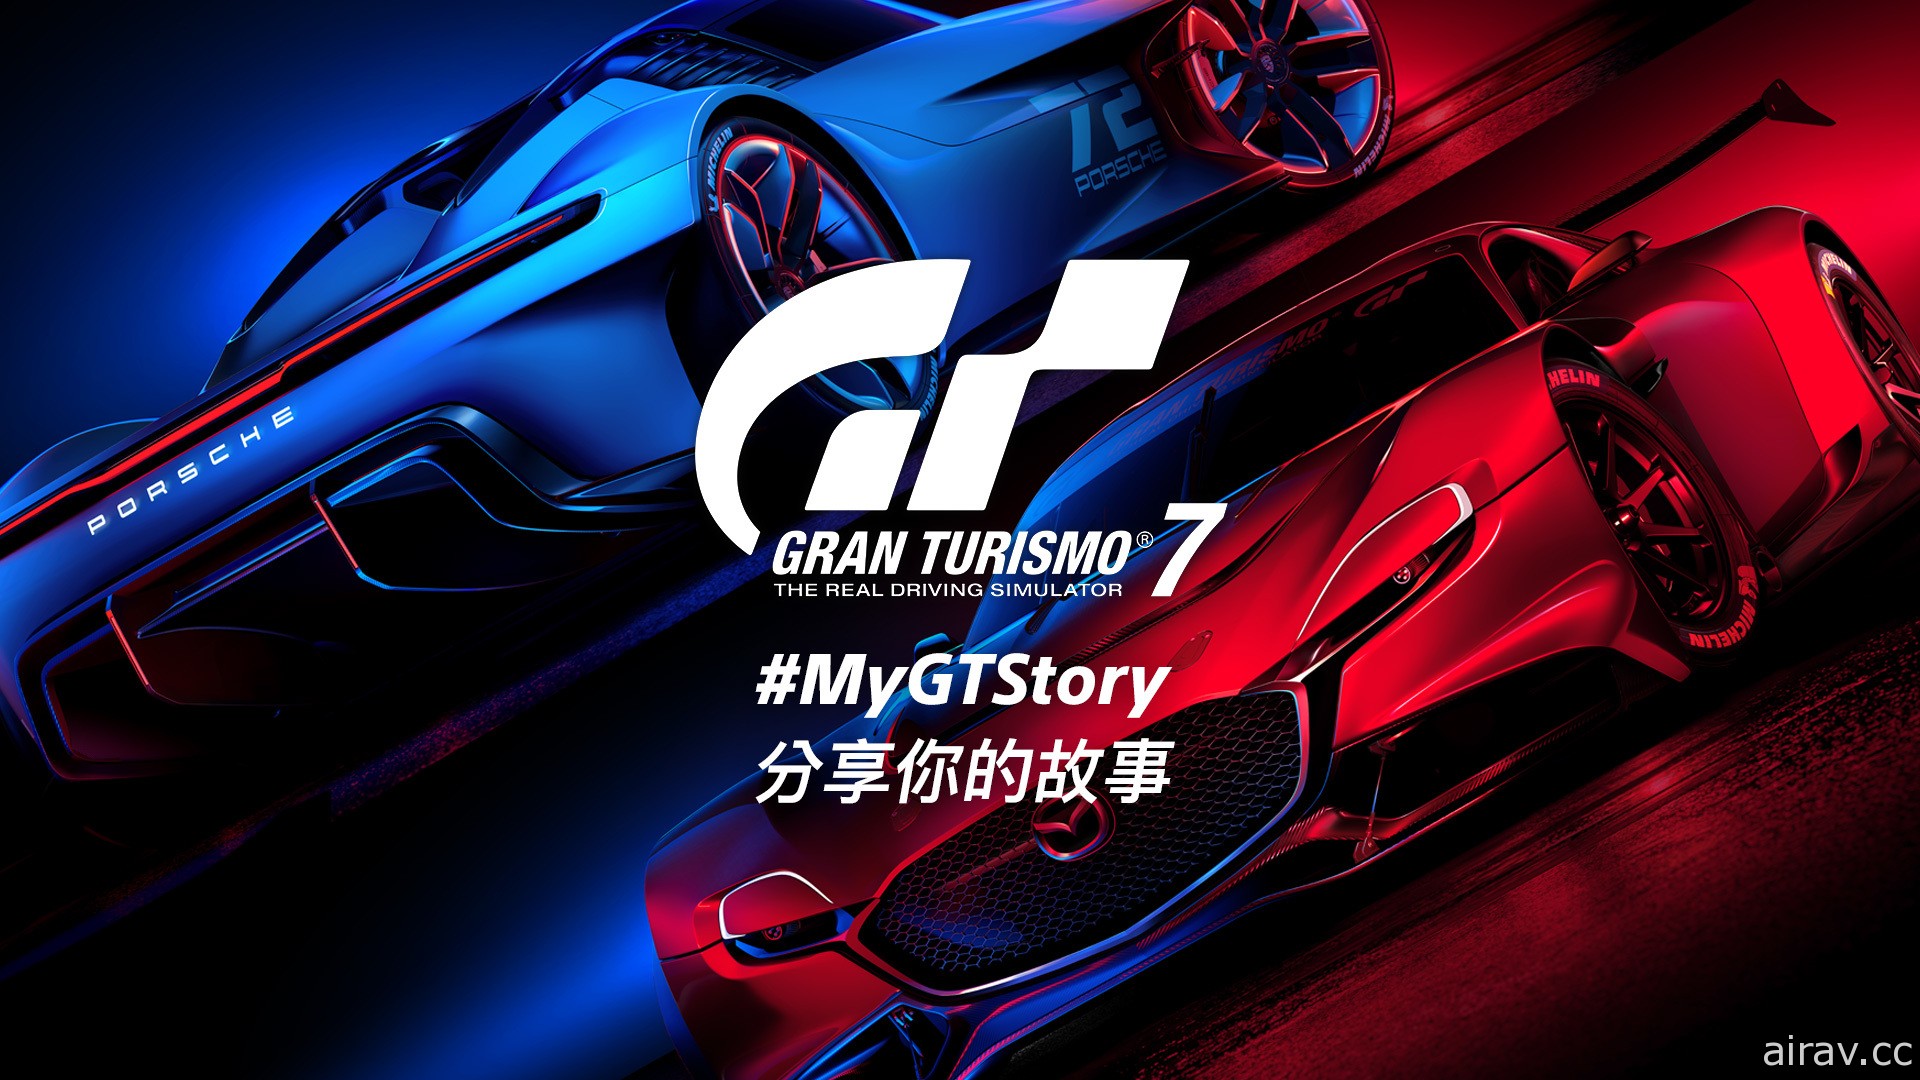 《跑车浪漫旅 7》MyGTStory 活动今日开跑 邀请玩家分享 GT 的故事及回忆